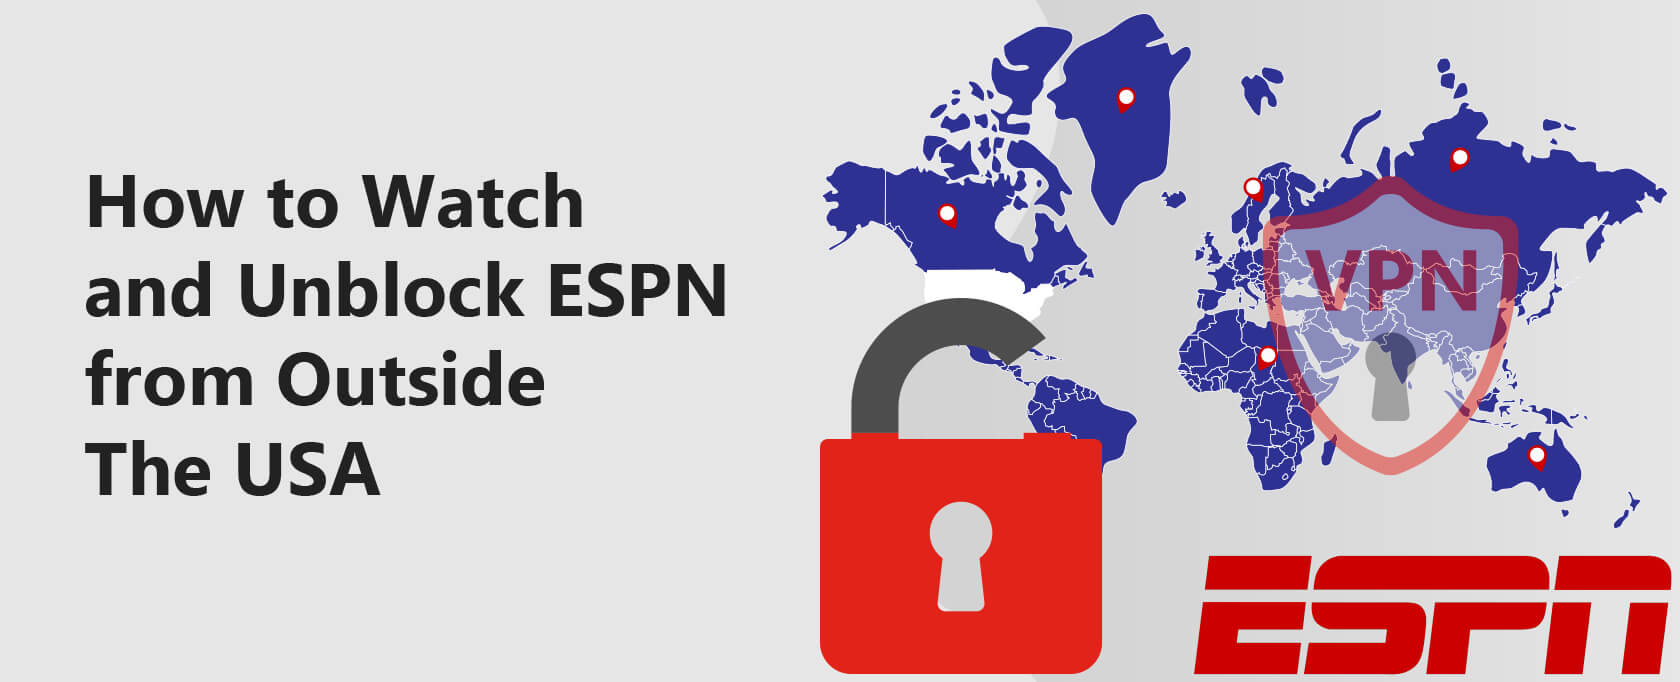 كيفية مشاهدة وإلغاء حجب شبكة اي اس بي إن (ESPN) من خارج الولايات المتحدة الأمريكية